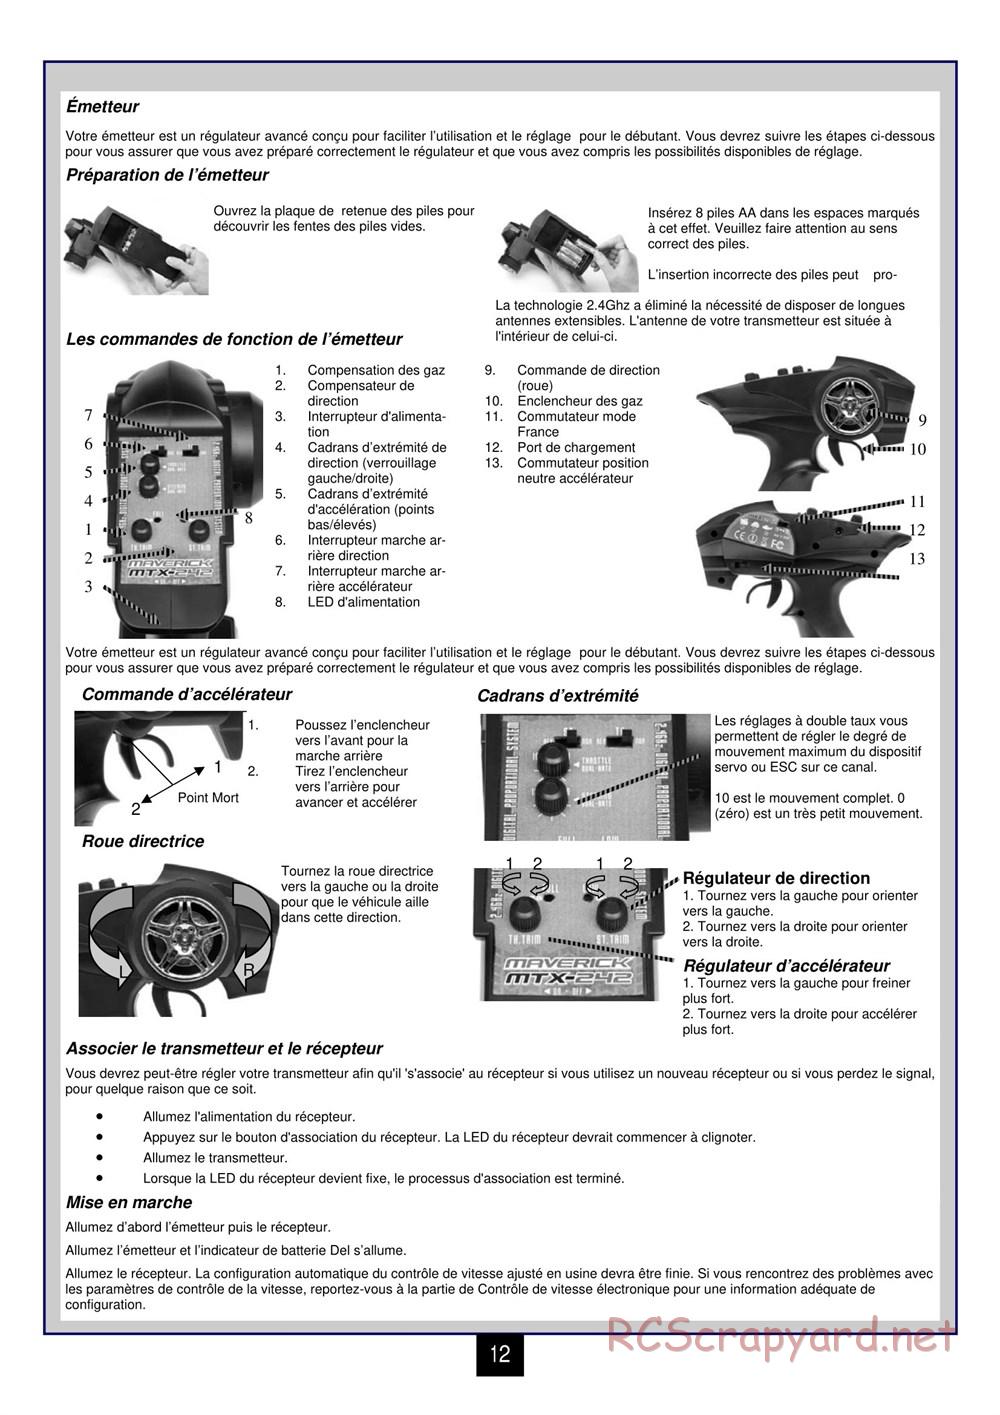 HPI - Maverick Blackout MT - Manual - Page 13